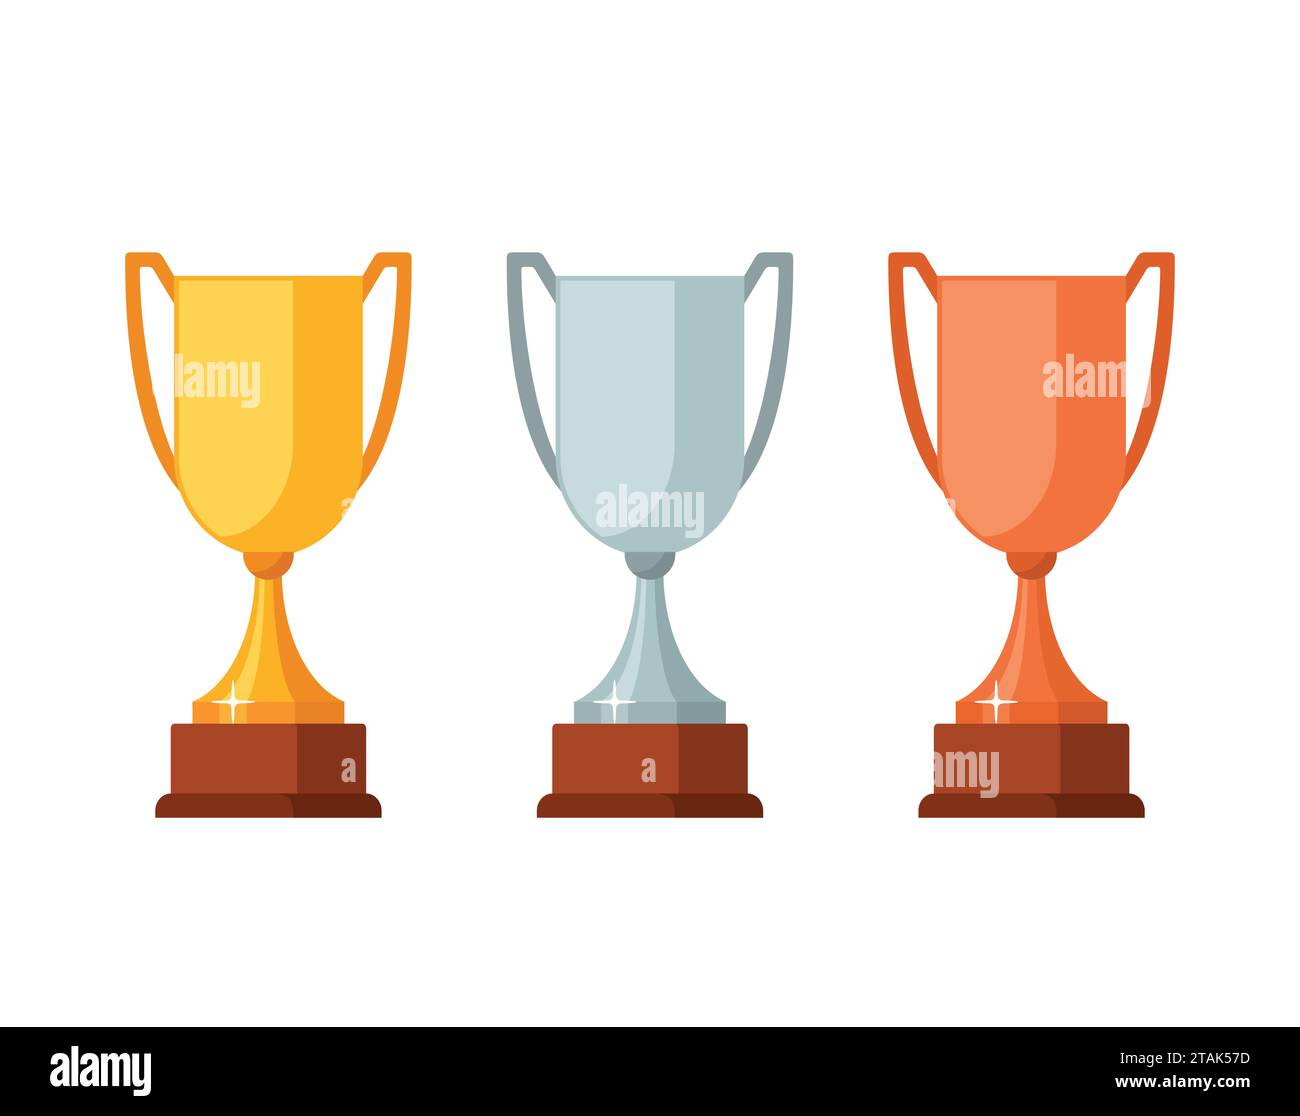 Coppe vincitrici del trofeo con base in legno isolata su sfondo bianco. Icona delle coppe premio oro, argento e bronzo illustrazione vettoriale Illustrazione Vettoriale